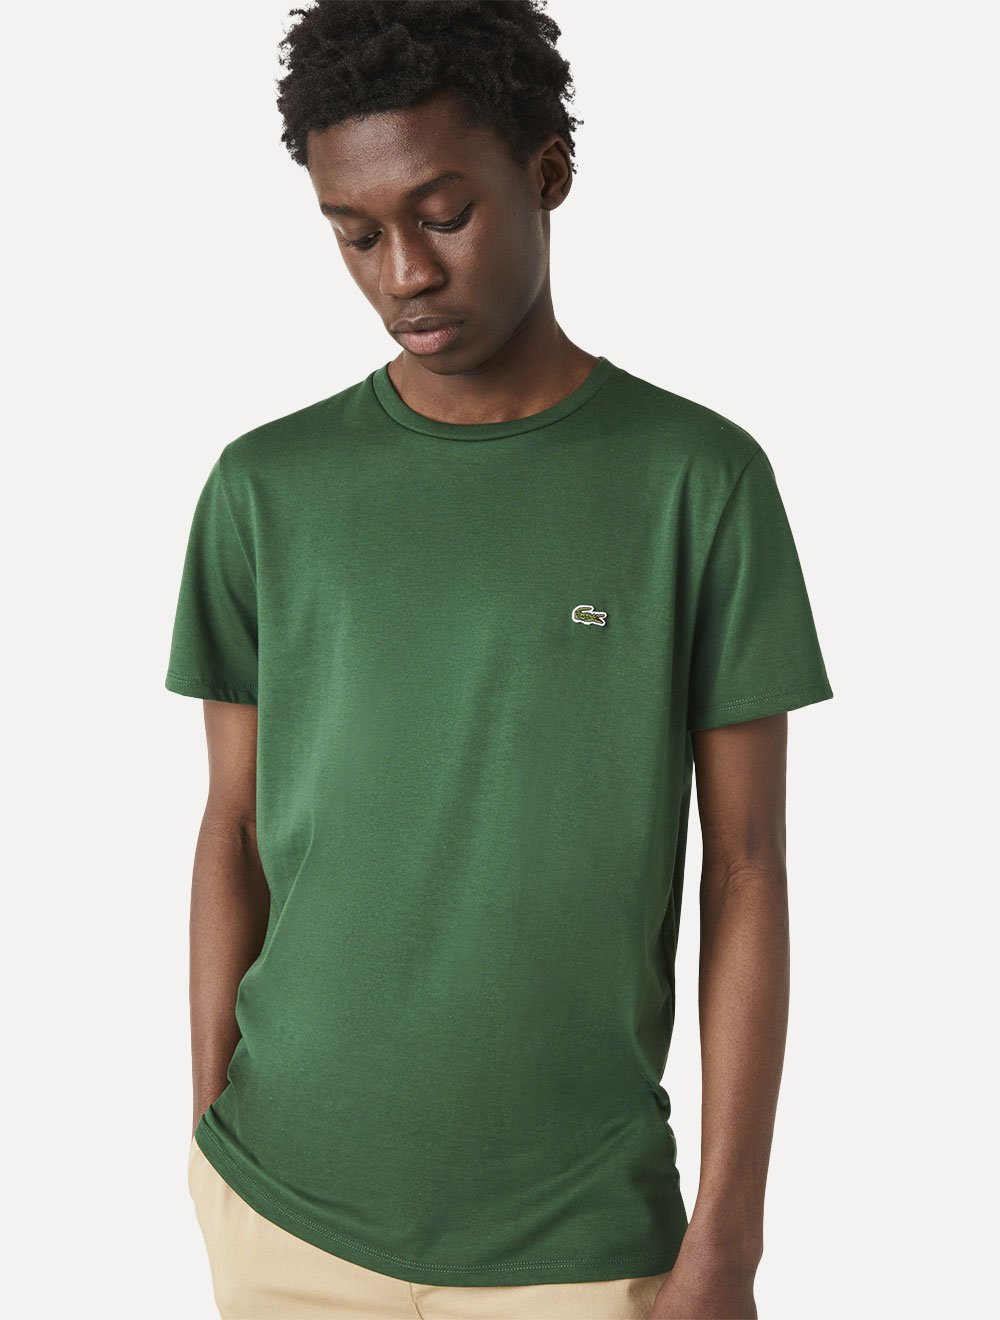 Camiseta Lacoste Masculina Jersey Pima Cotton Verde Escuro